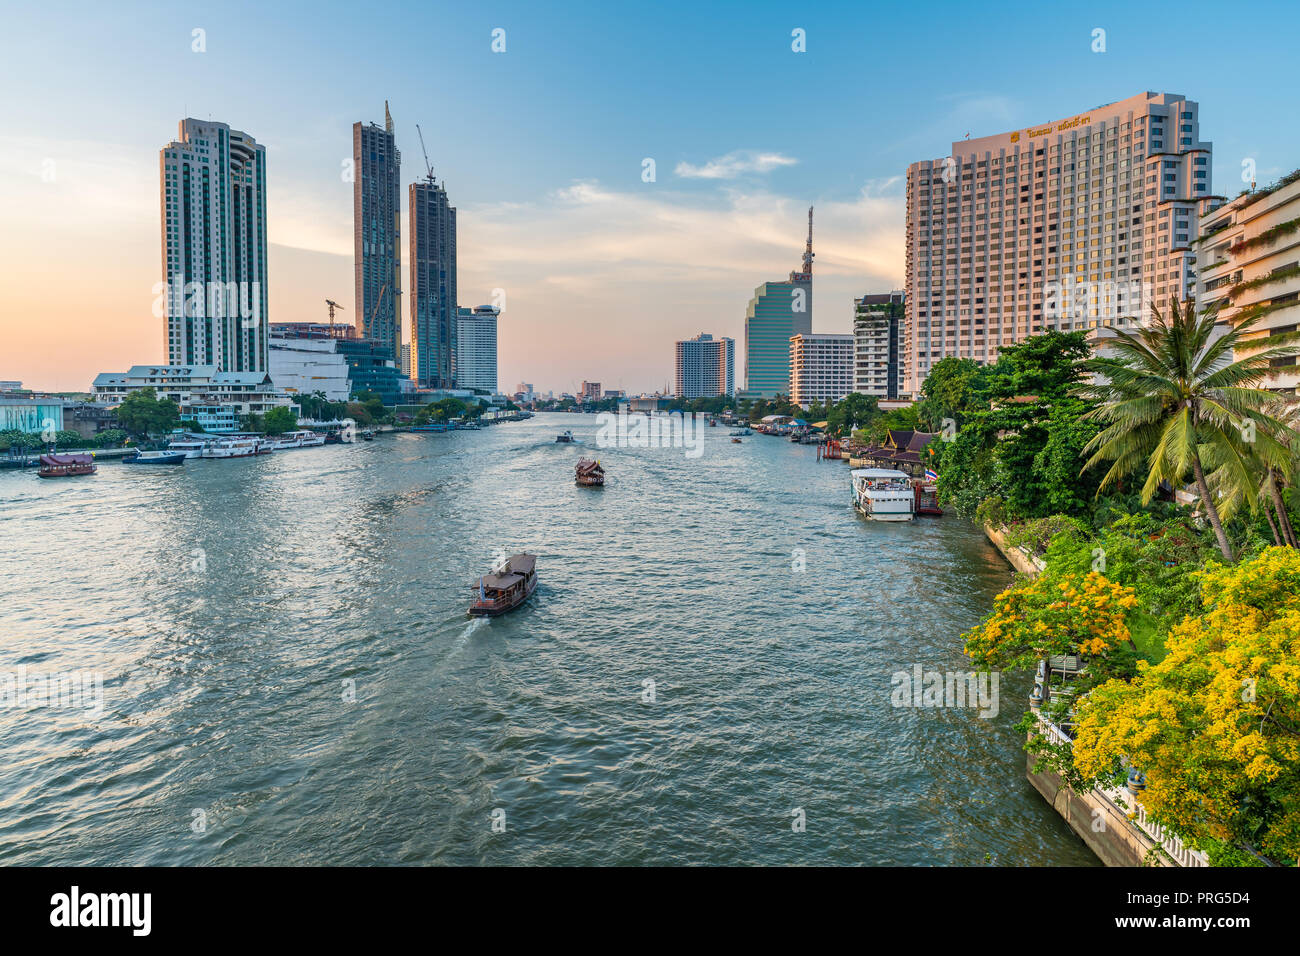 BANGKOK, THAILAND - März 20, 2018: Chaopraya River ist der größte Fluss in Thailand. Es fließt durch Bangkok und dann in den Golf von Thailand. Stockfoto